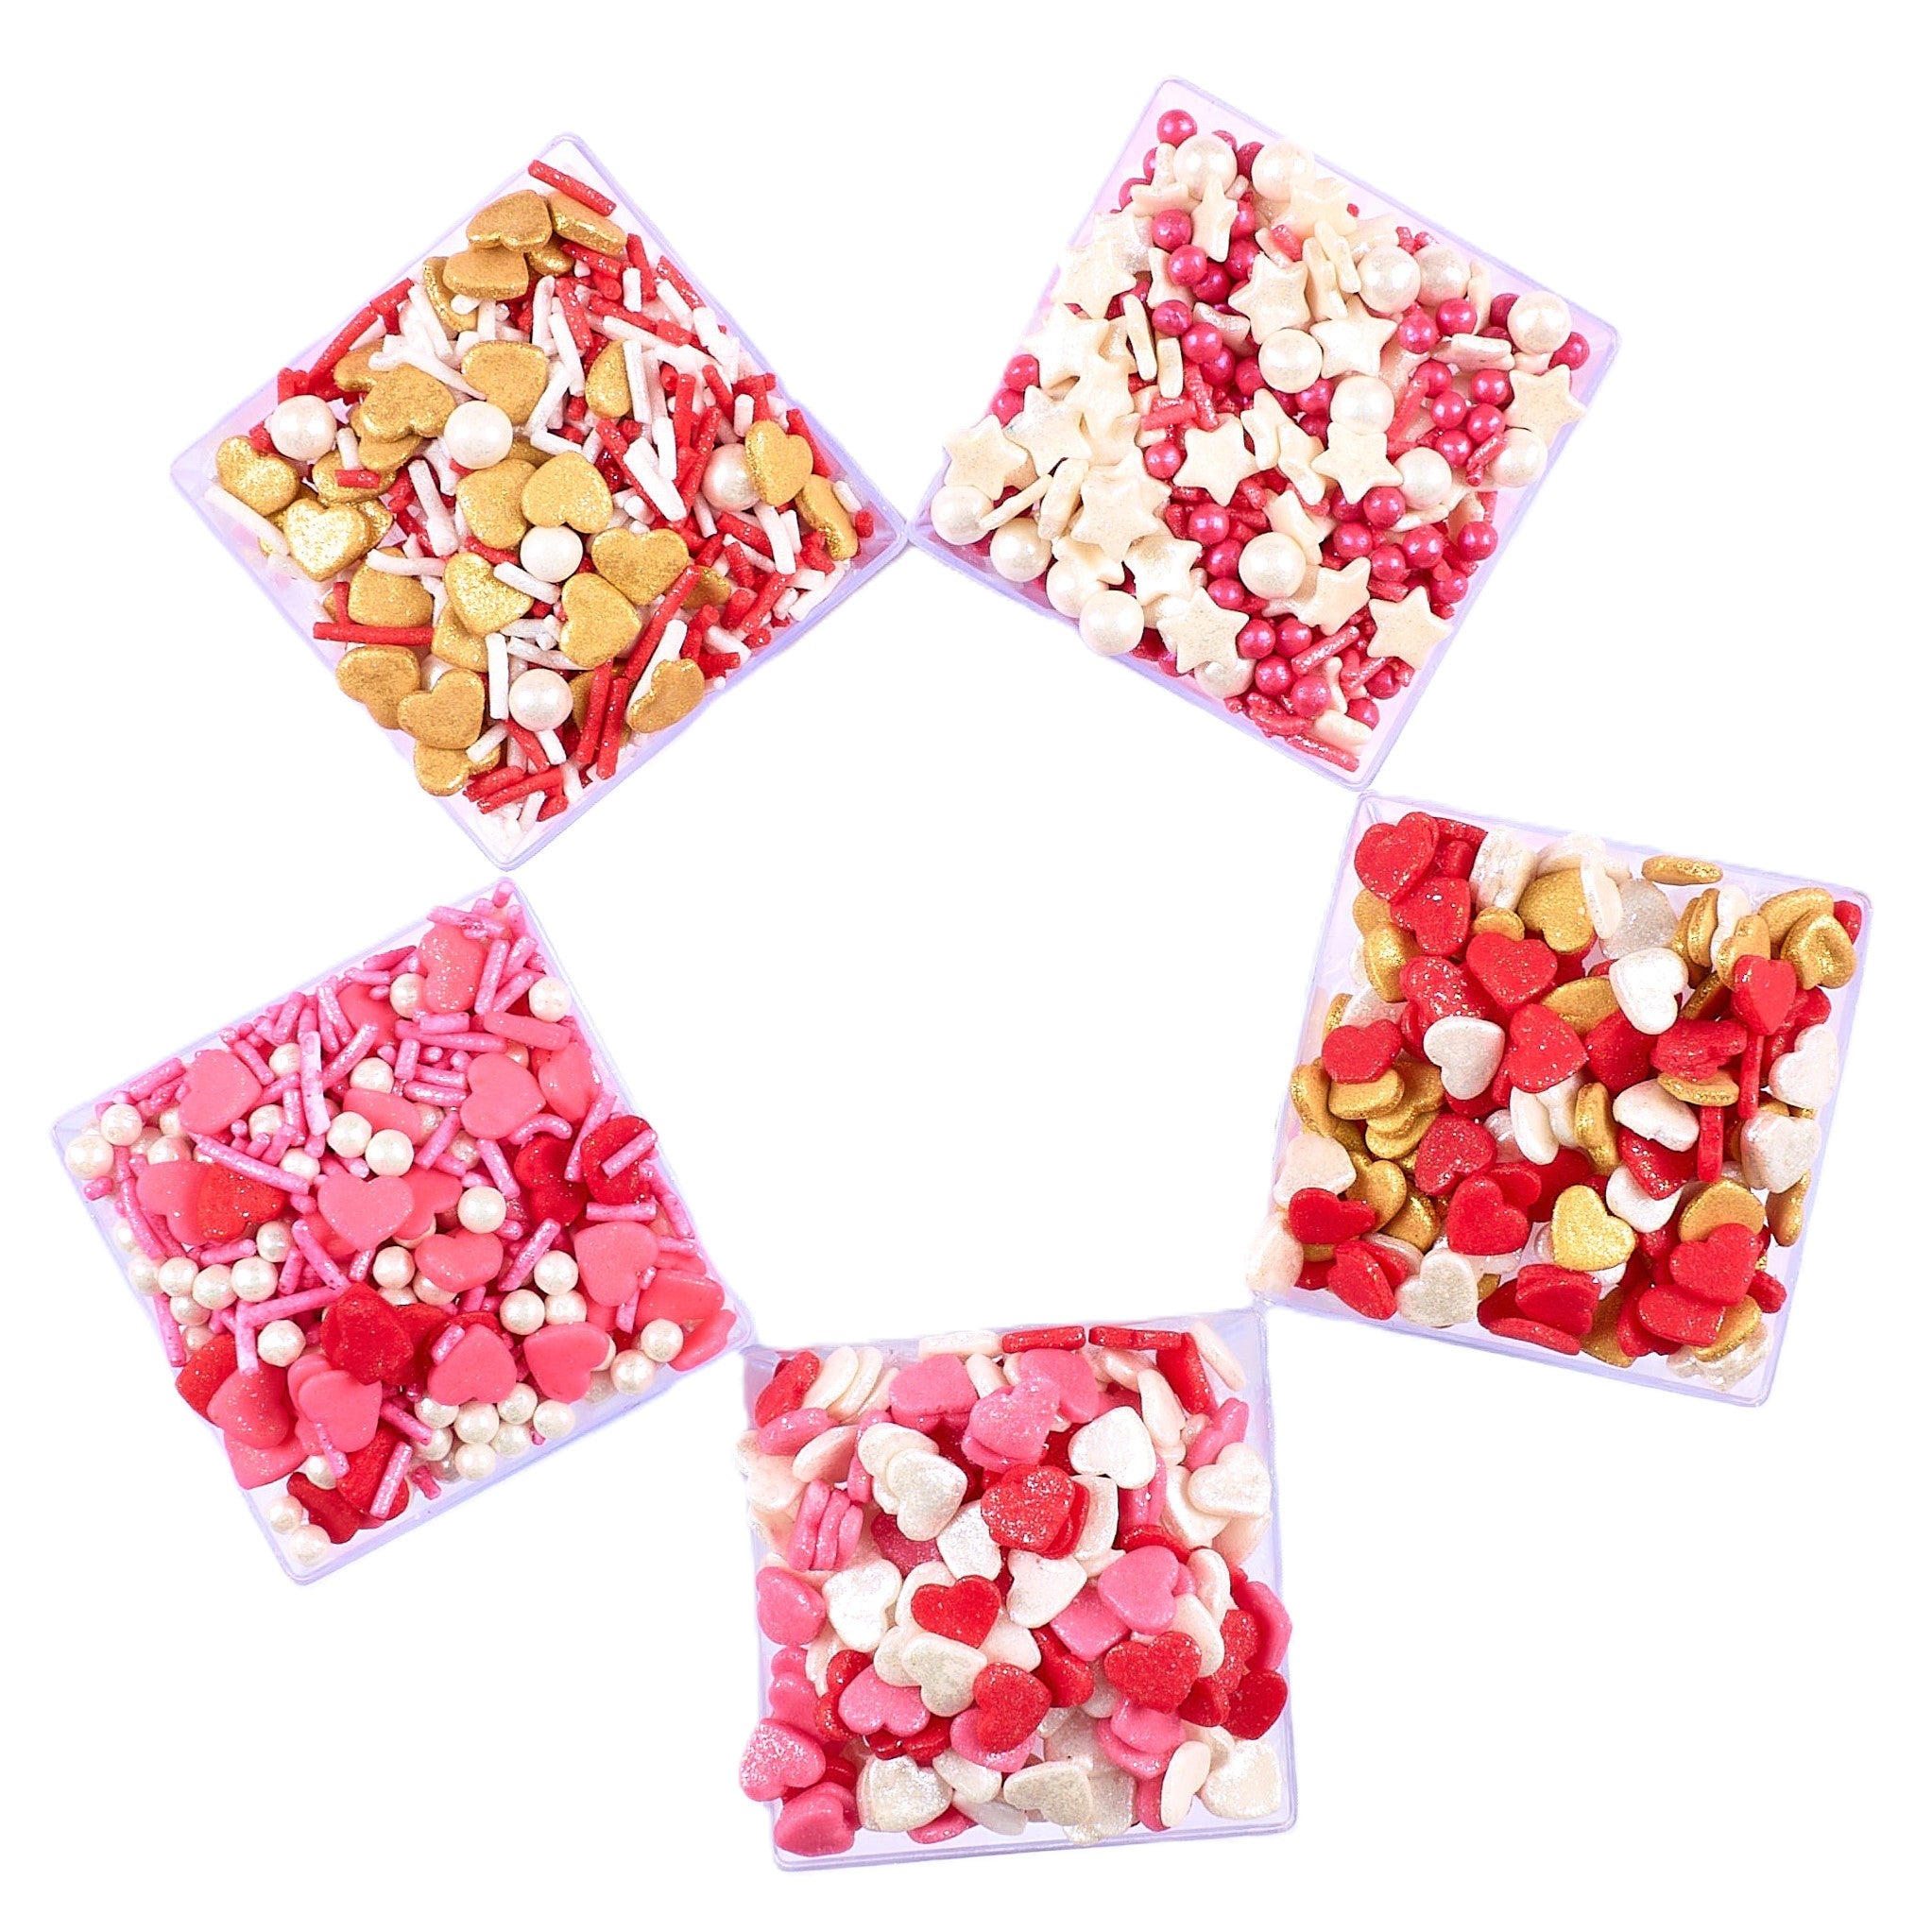 Valentine Sprinkles VS Multipack 08 - 100 gms